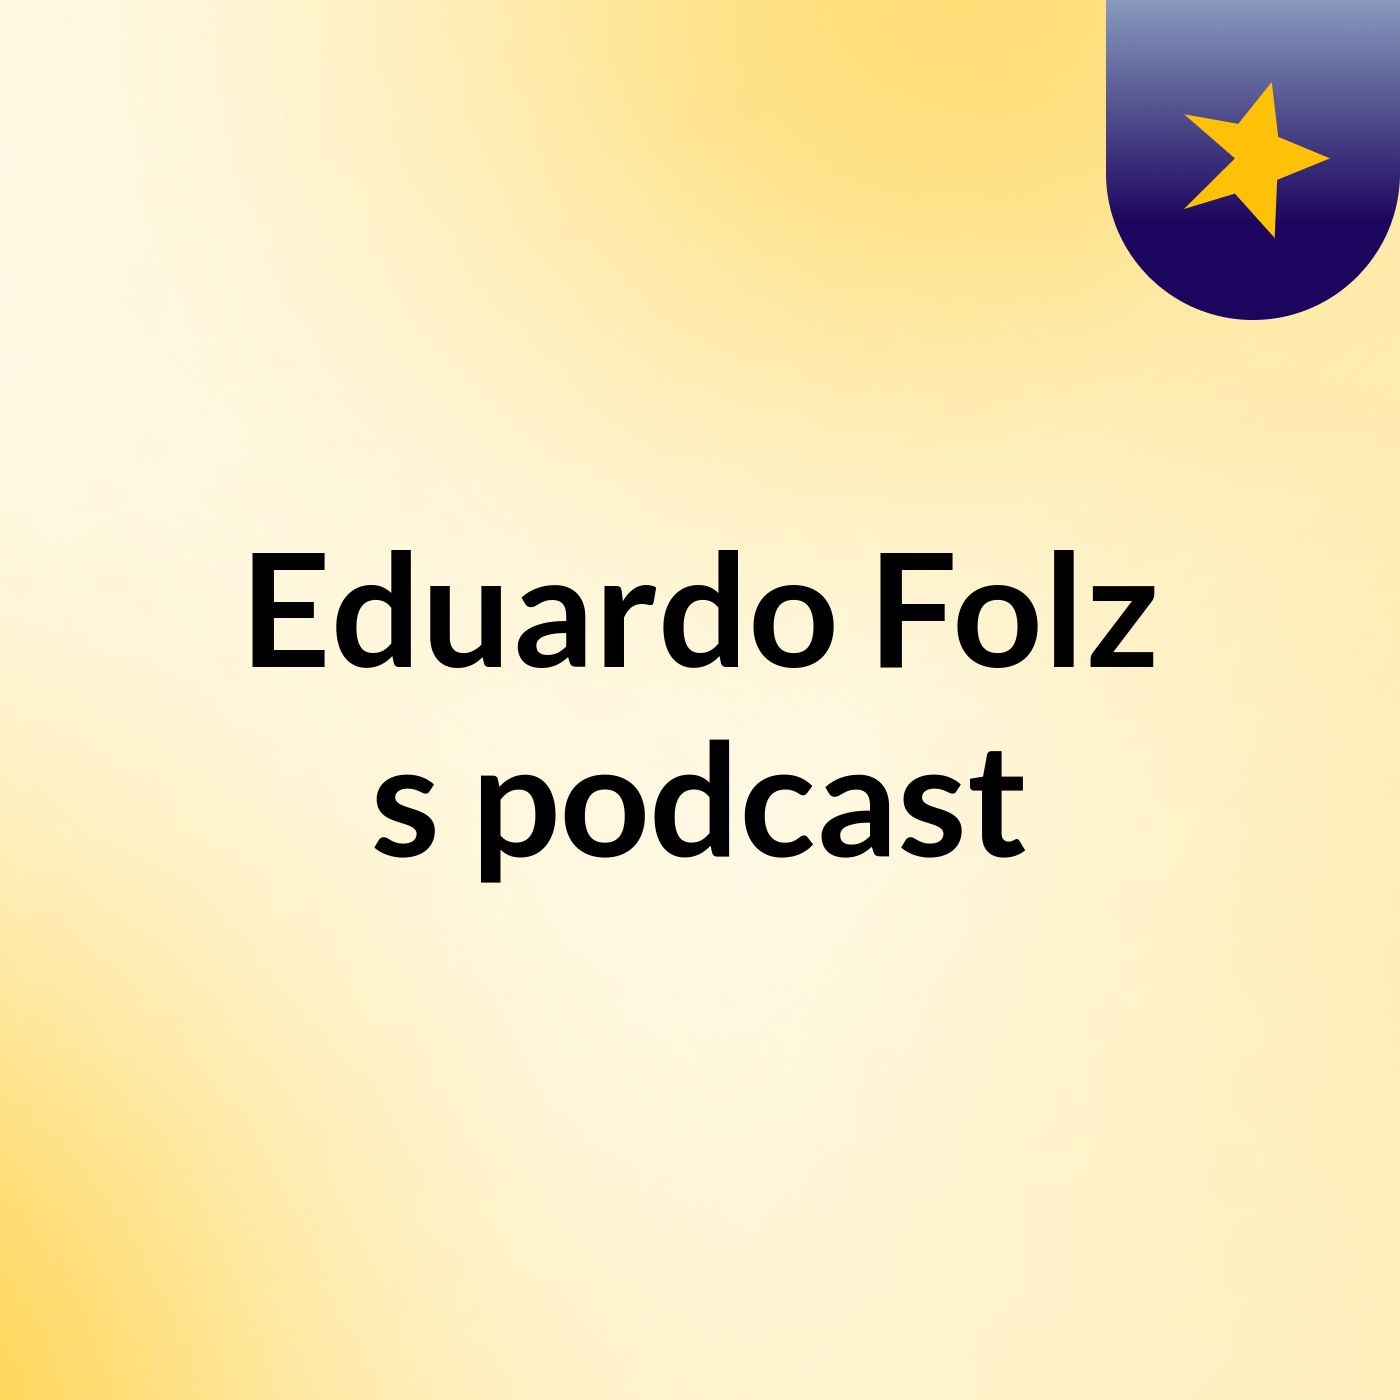 Eduardo Folz's podcast